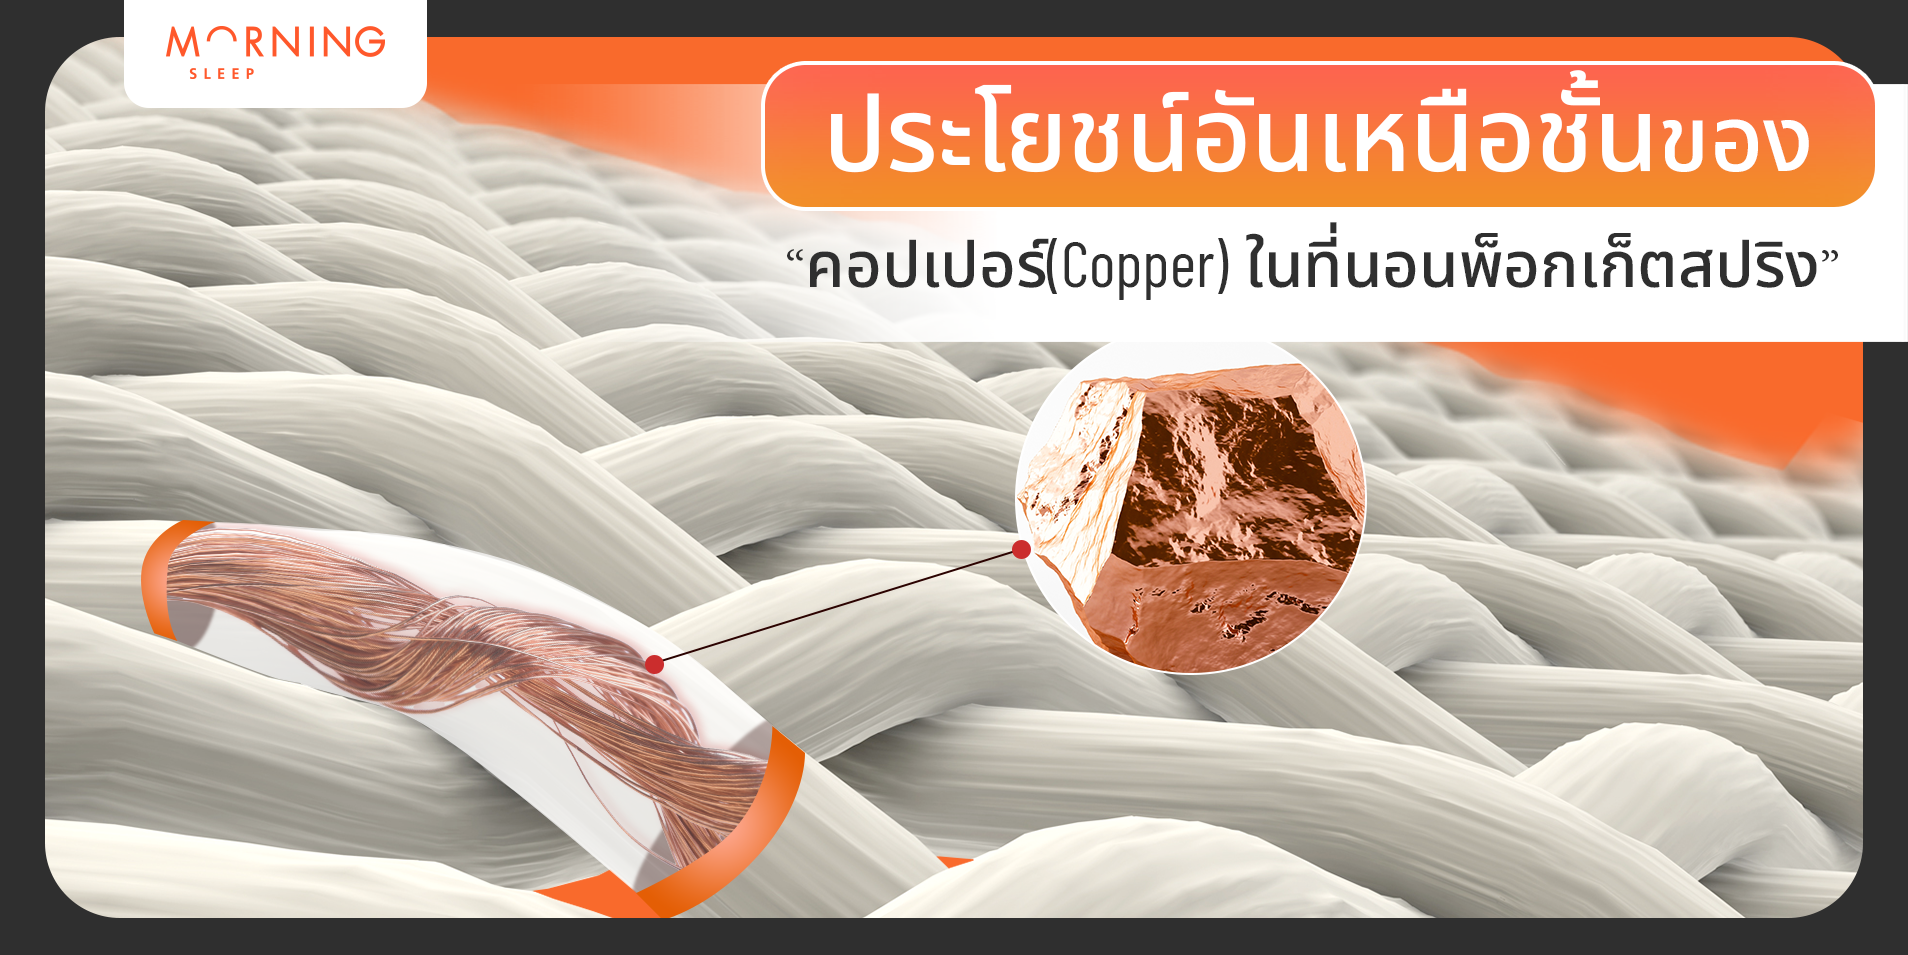 ประโยชน์คอปเปอร์(Copper)